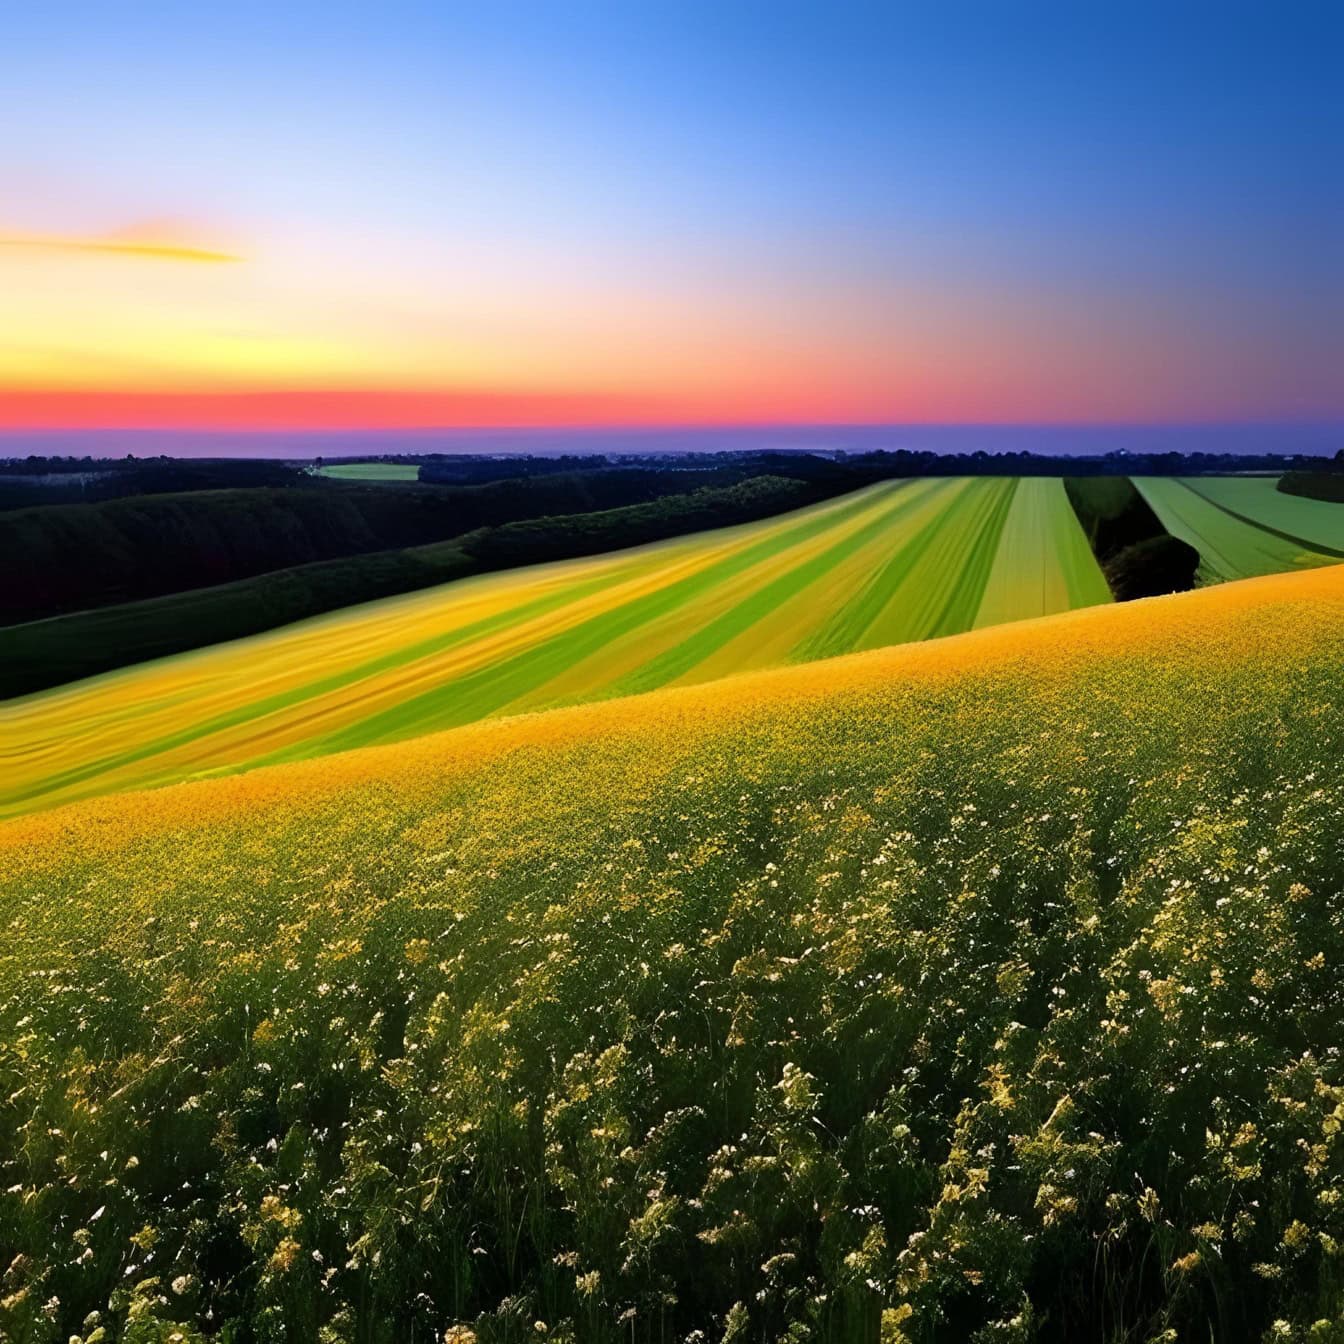 ภาพประกอบกราฟิกของทุ่งดอกไม้บนยอดเขาและพื้นที่เกษตรกรรมเป็นพื้นหลังเมื่อพระอาทิตย์ตกดิน